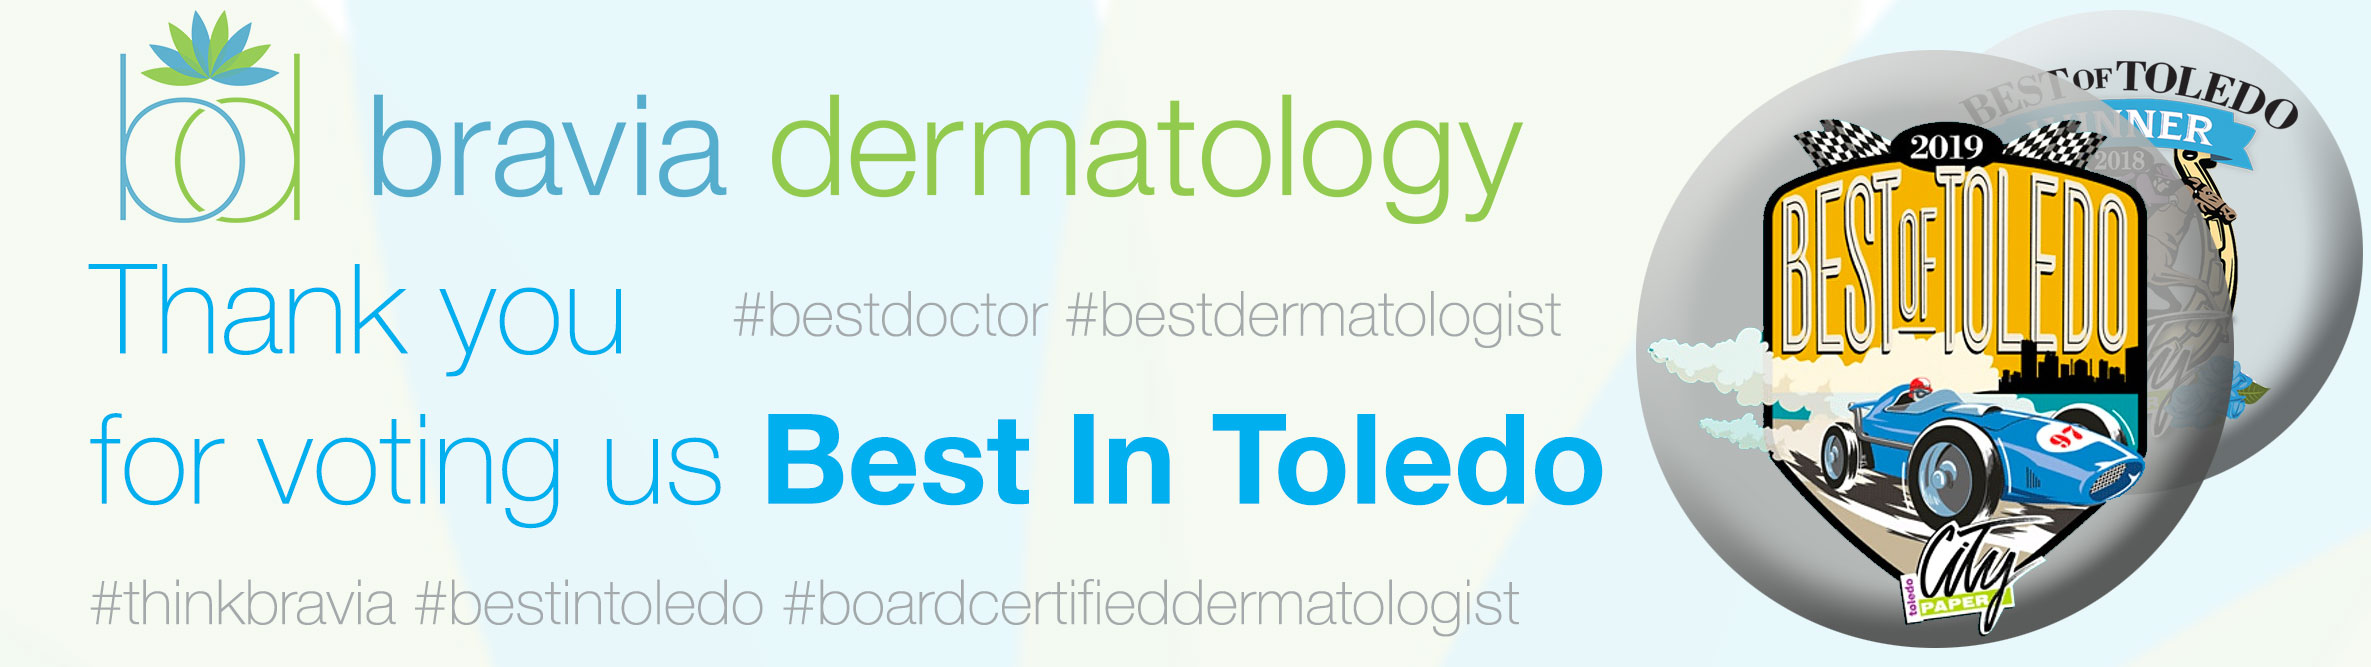 Bravia Dermatology was voted Best Dermatologist in Toledo